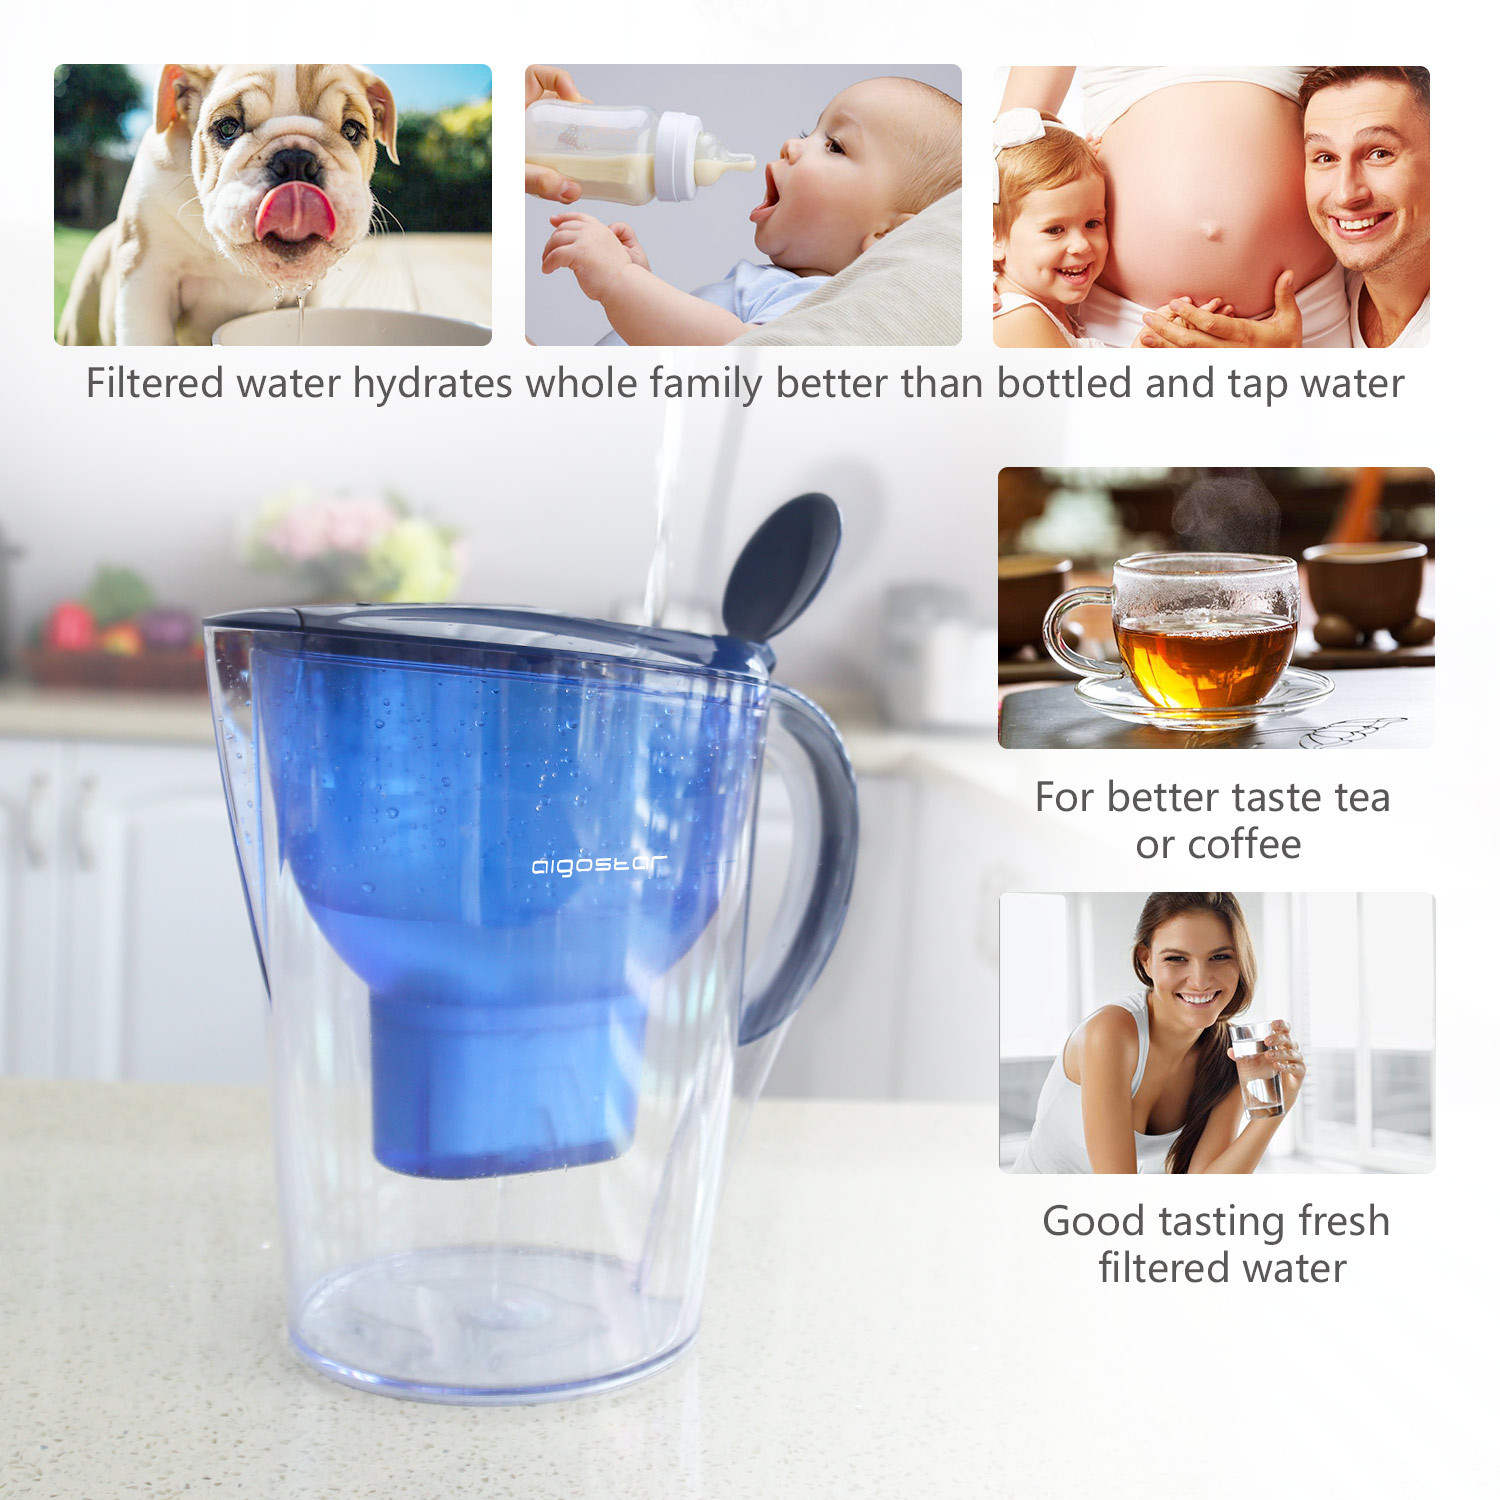 Aigostar Pack de 6 filtros para jarra de agua. Filtros de repuesto para jarra de agua Aigostar, duración 60 días por cada cartucho. Libre de BPA.